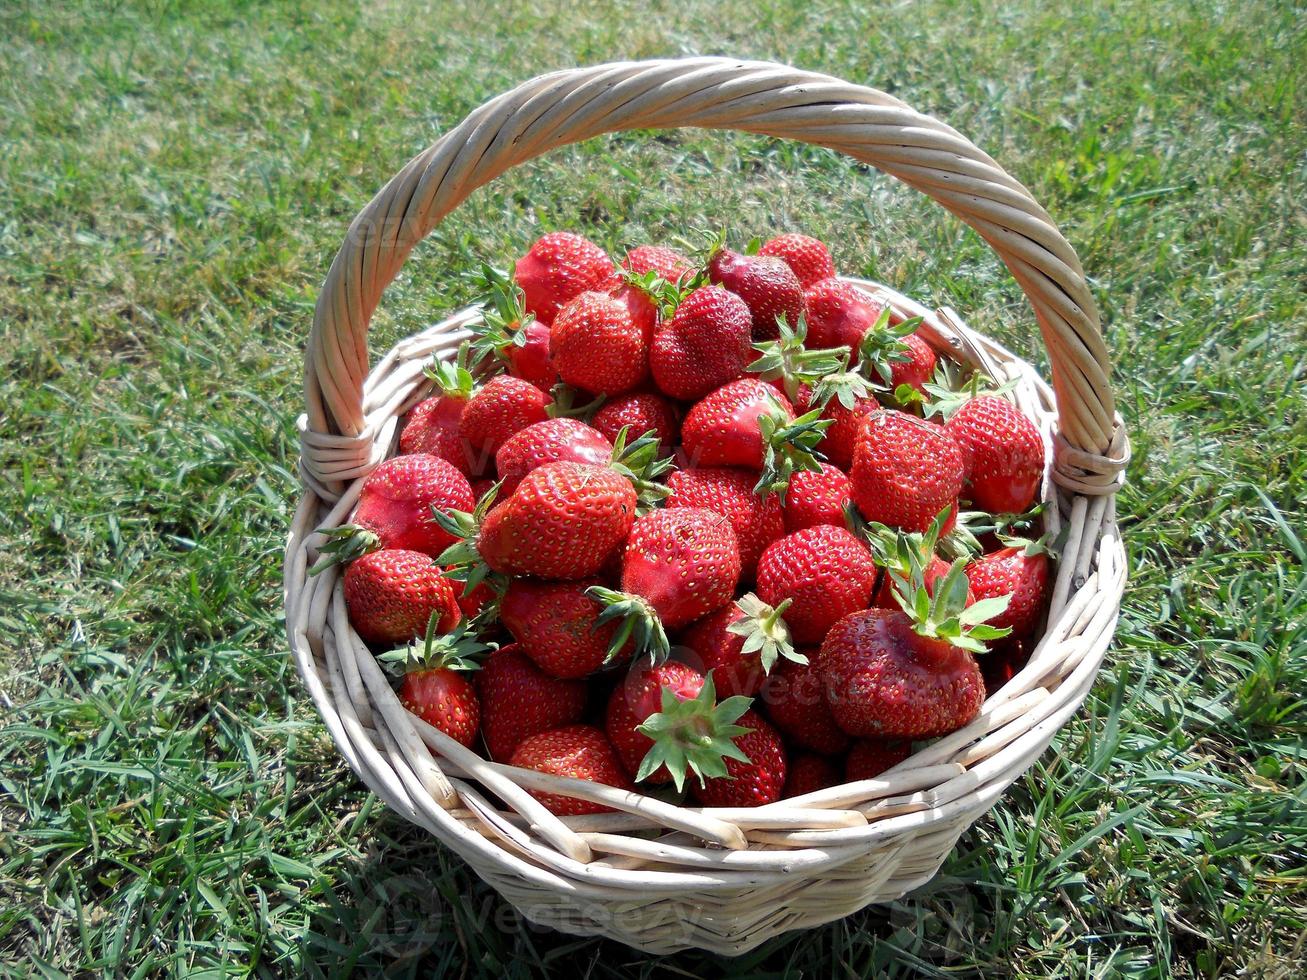 la photo montre des fraises rouges entières de baies mûres